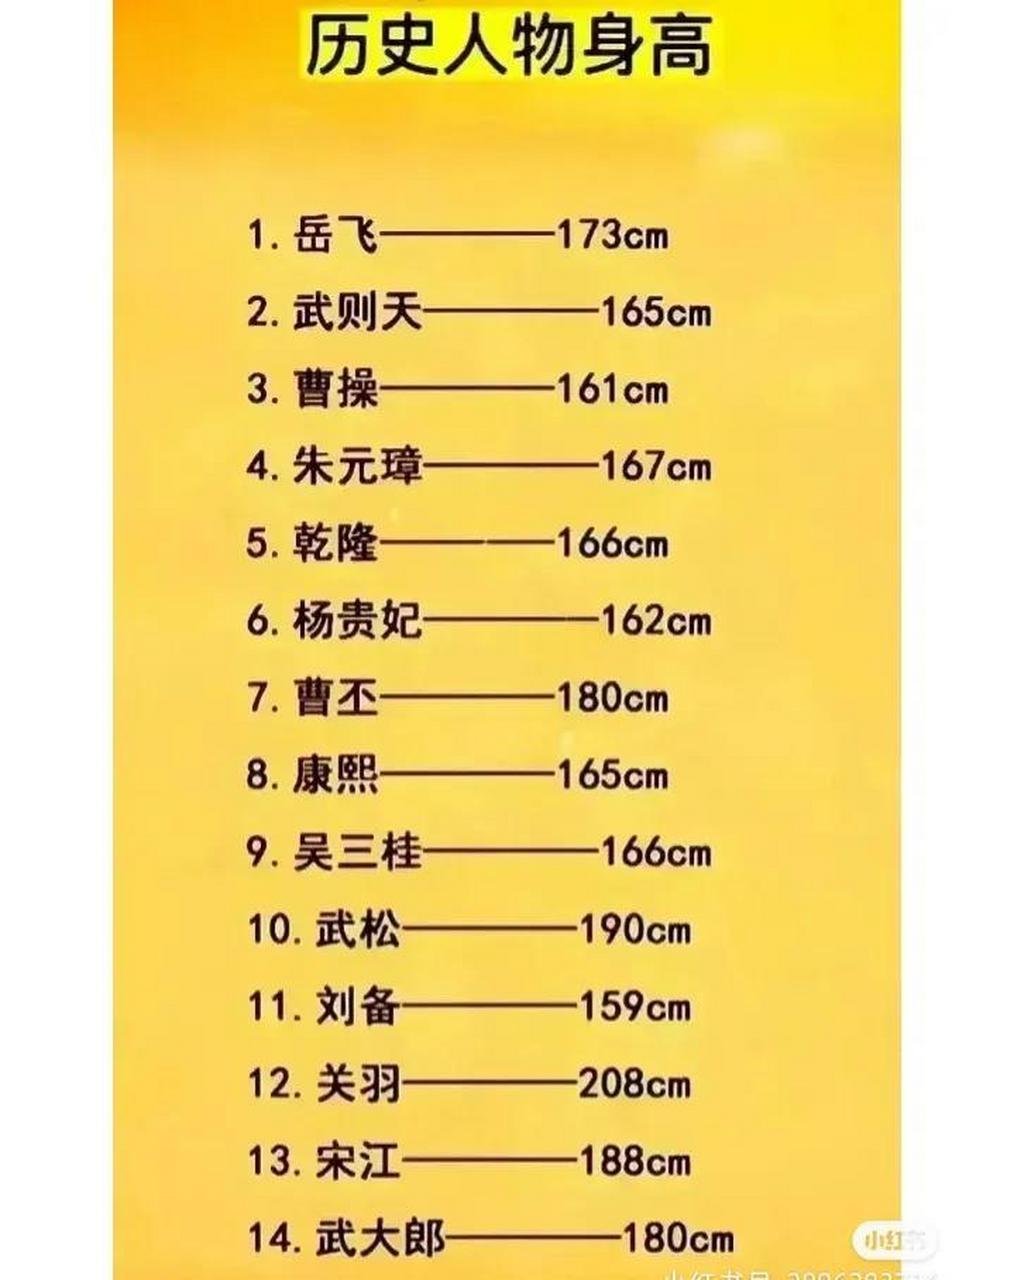 中国伟人身高一览表图片